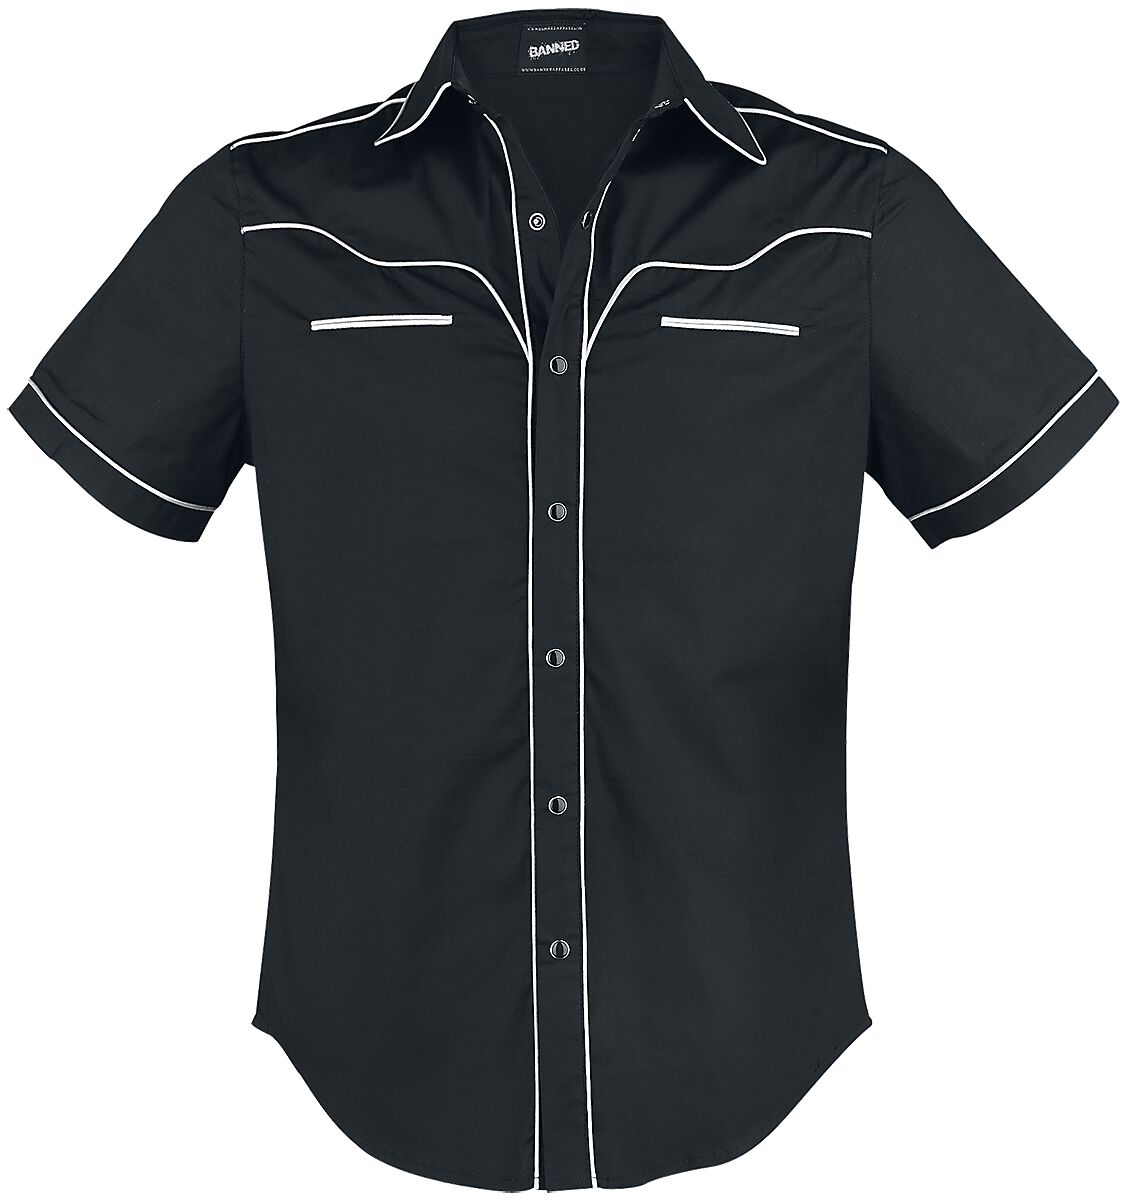 Banned Alternative - Rockabilly Kurzarmhemd - Plain Trim - S bis 5XL - für Männer - Größe L - schwarz/weiß